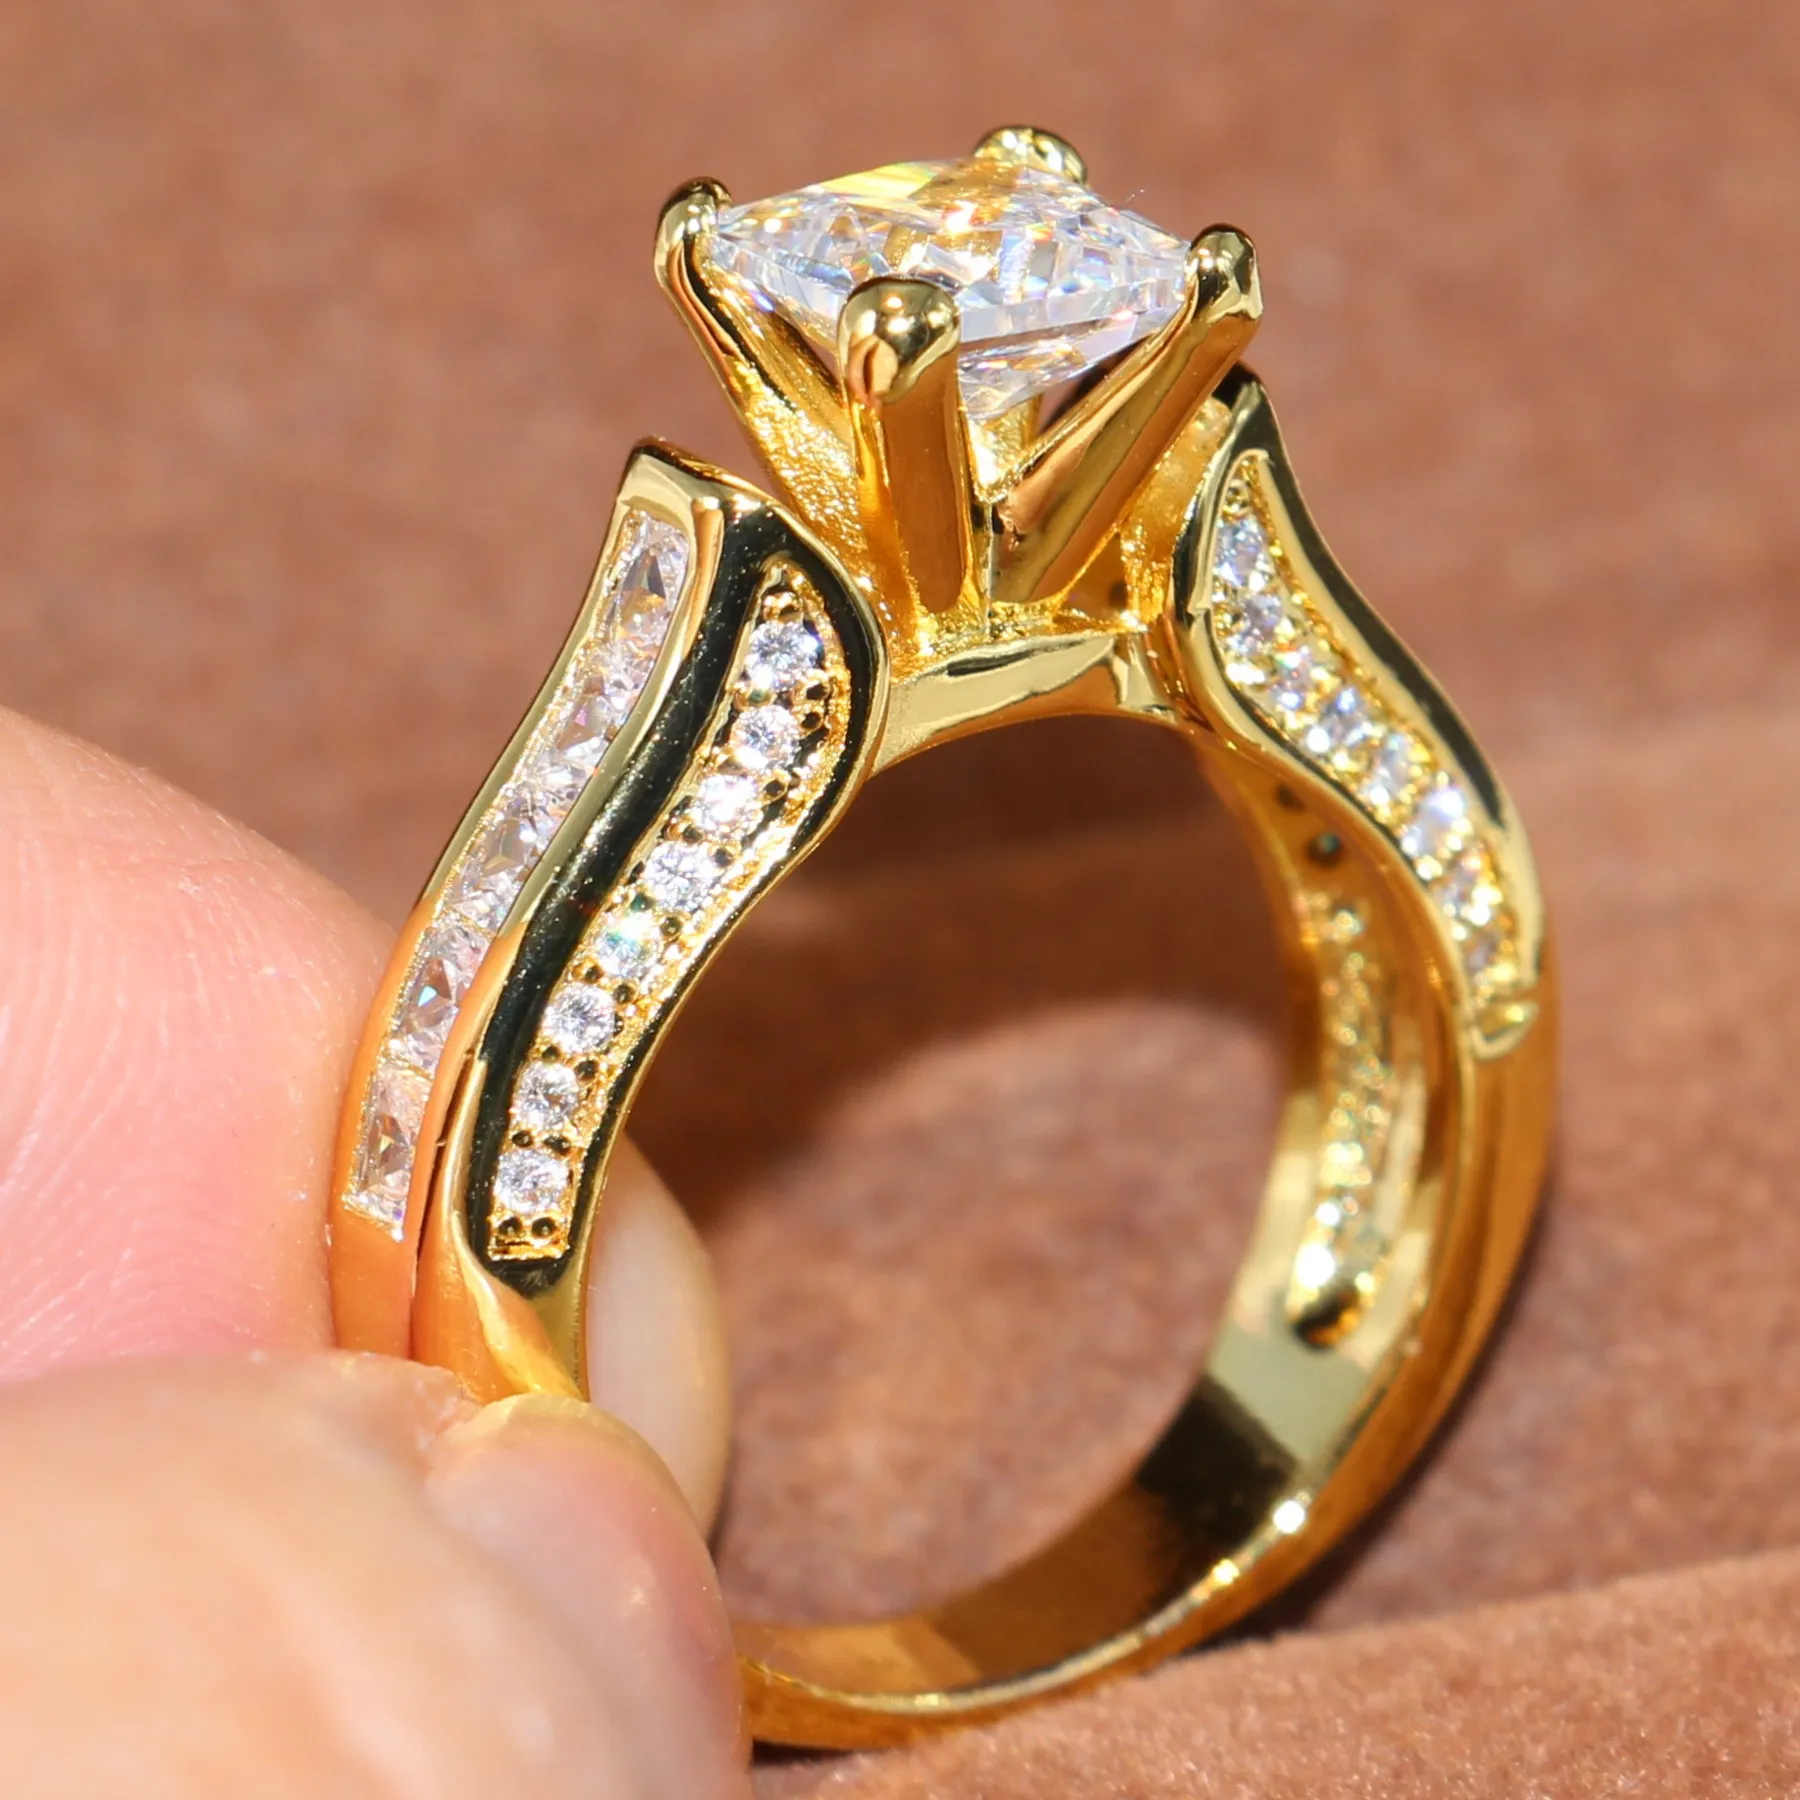 Mujeres anillo de bodas Tamaño joyería 5-11 espumoso cuadrado de la manera 14KT Yellow Gold Filled corte princesa partido Topaz blanco piedras preciosas CZ Diamond